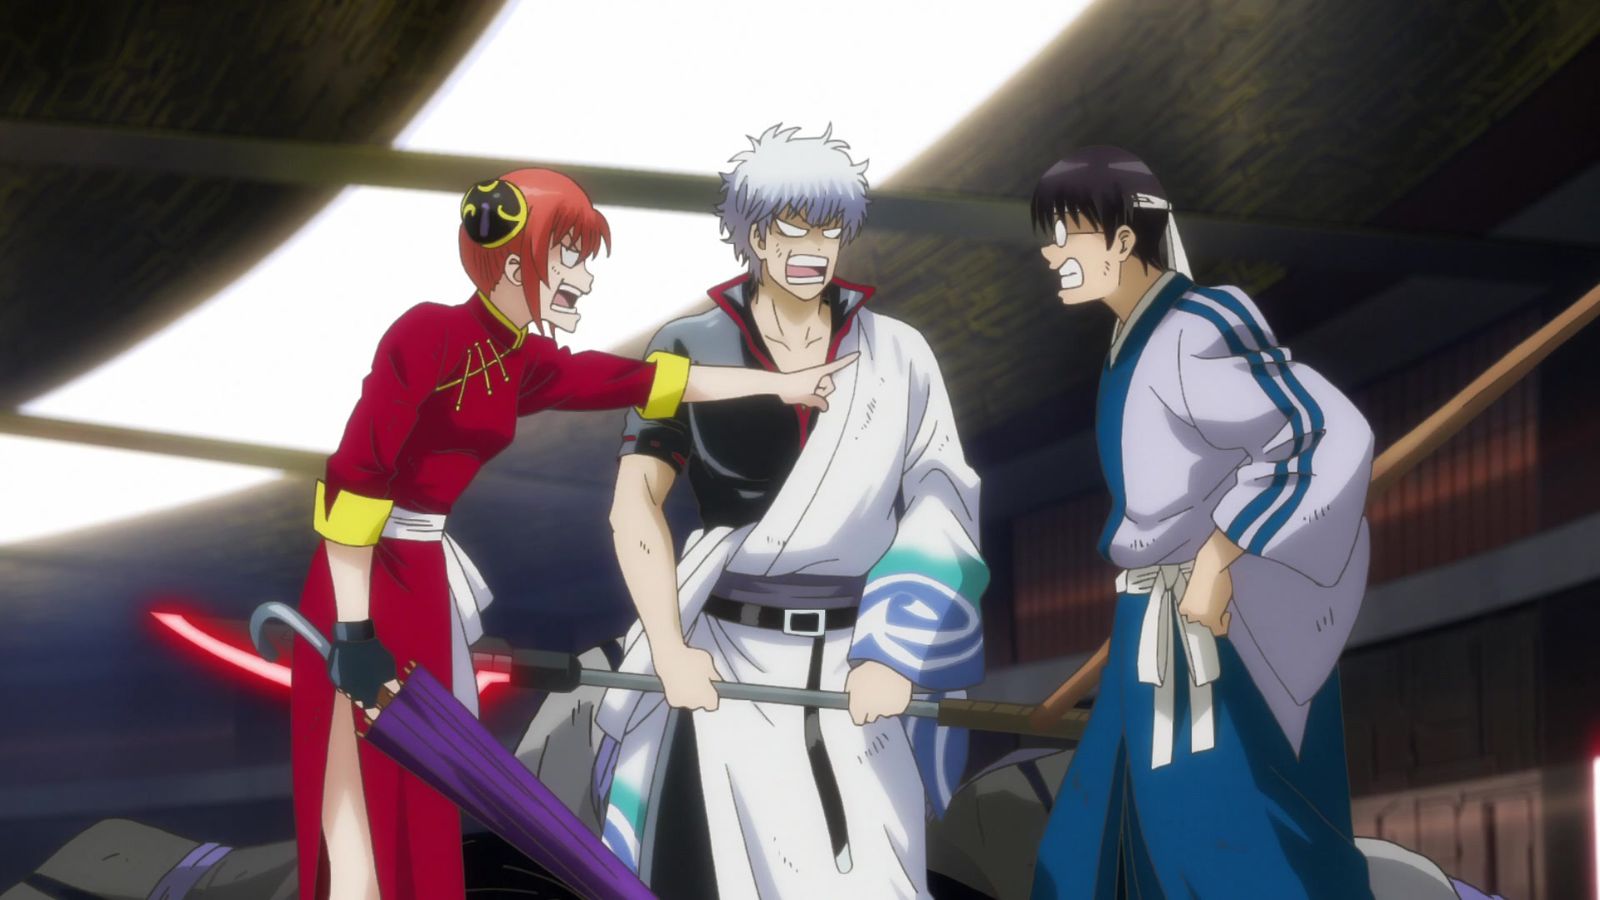 Kagura, Gintoki, and Shinpachi arguing.